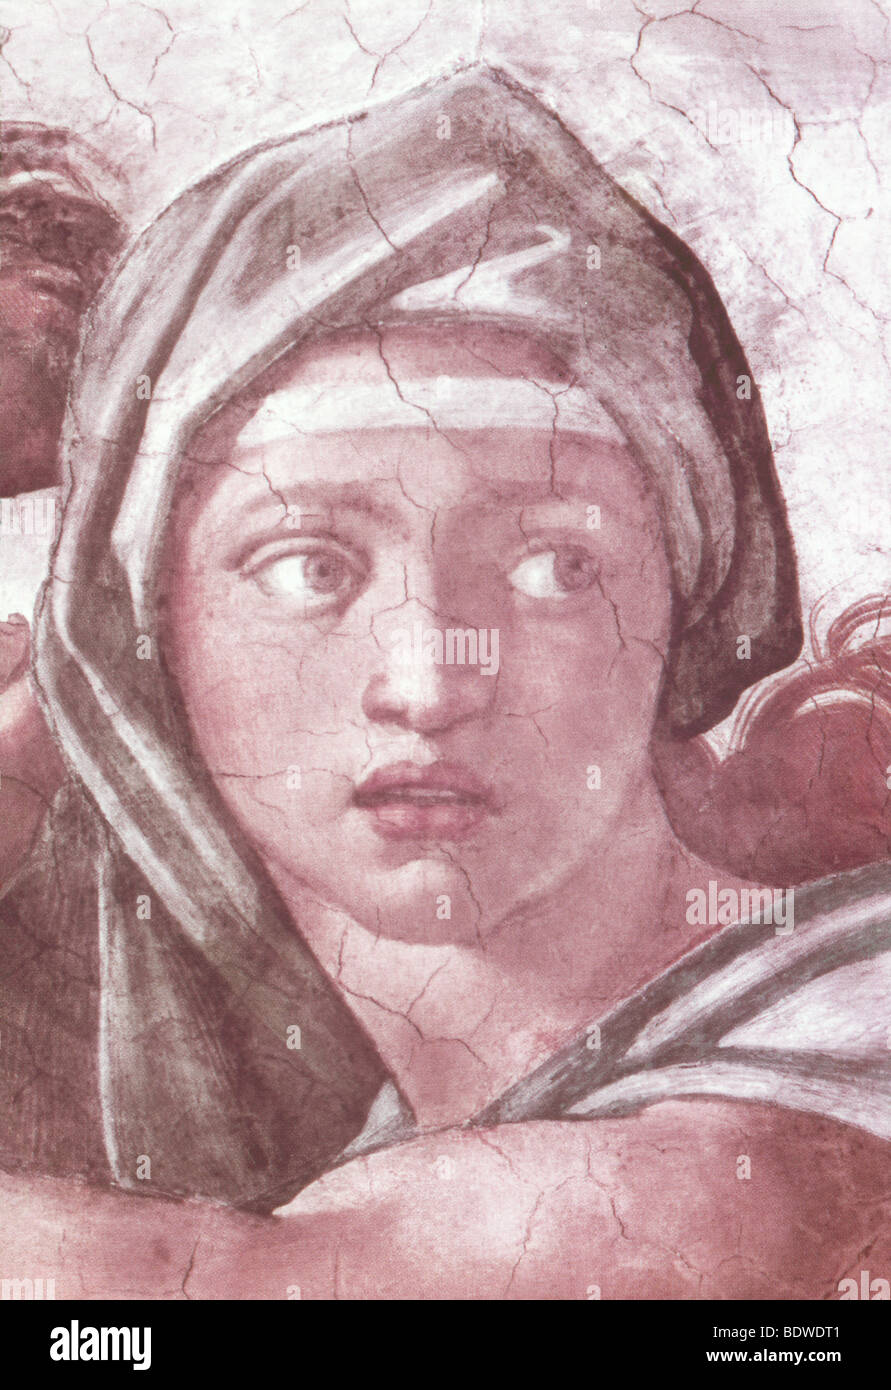 Incluido entre las cifras incluyen cuando Miguel Ángel pintó el techo de la capilla Sixtina fue la Sibila Delphic. Foto de stock